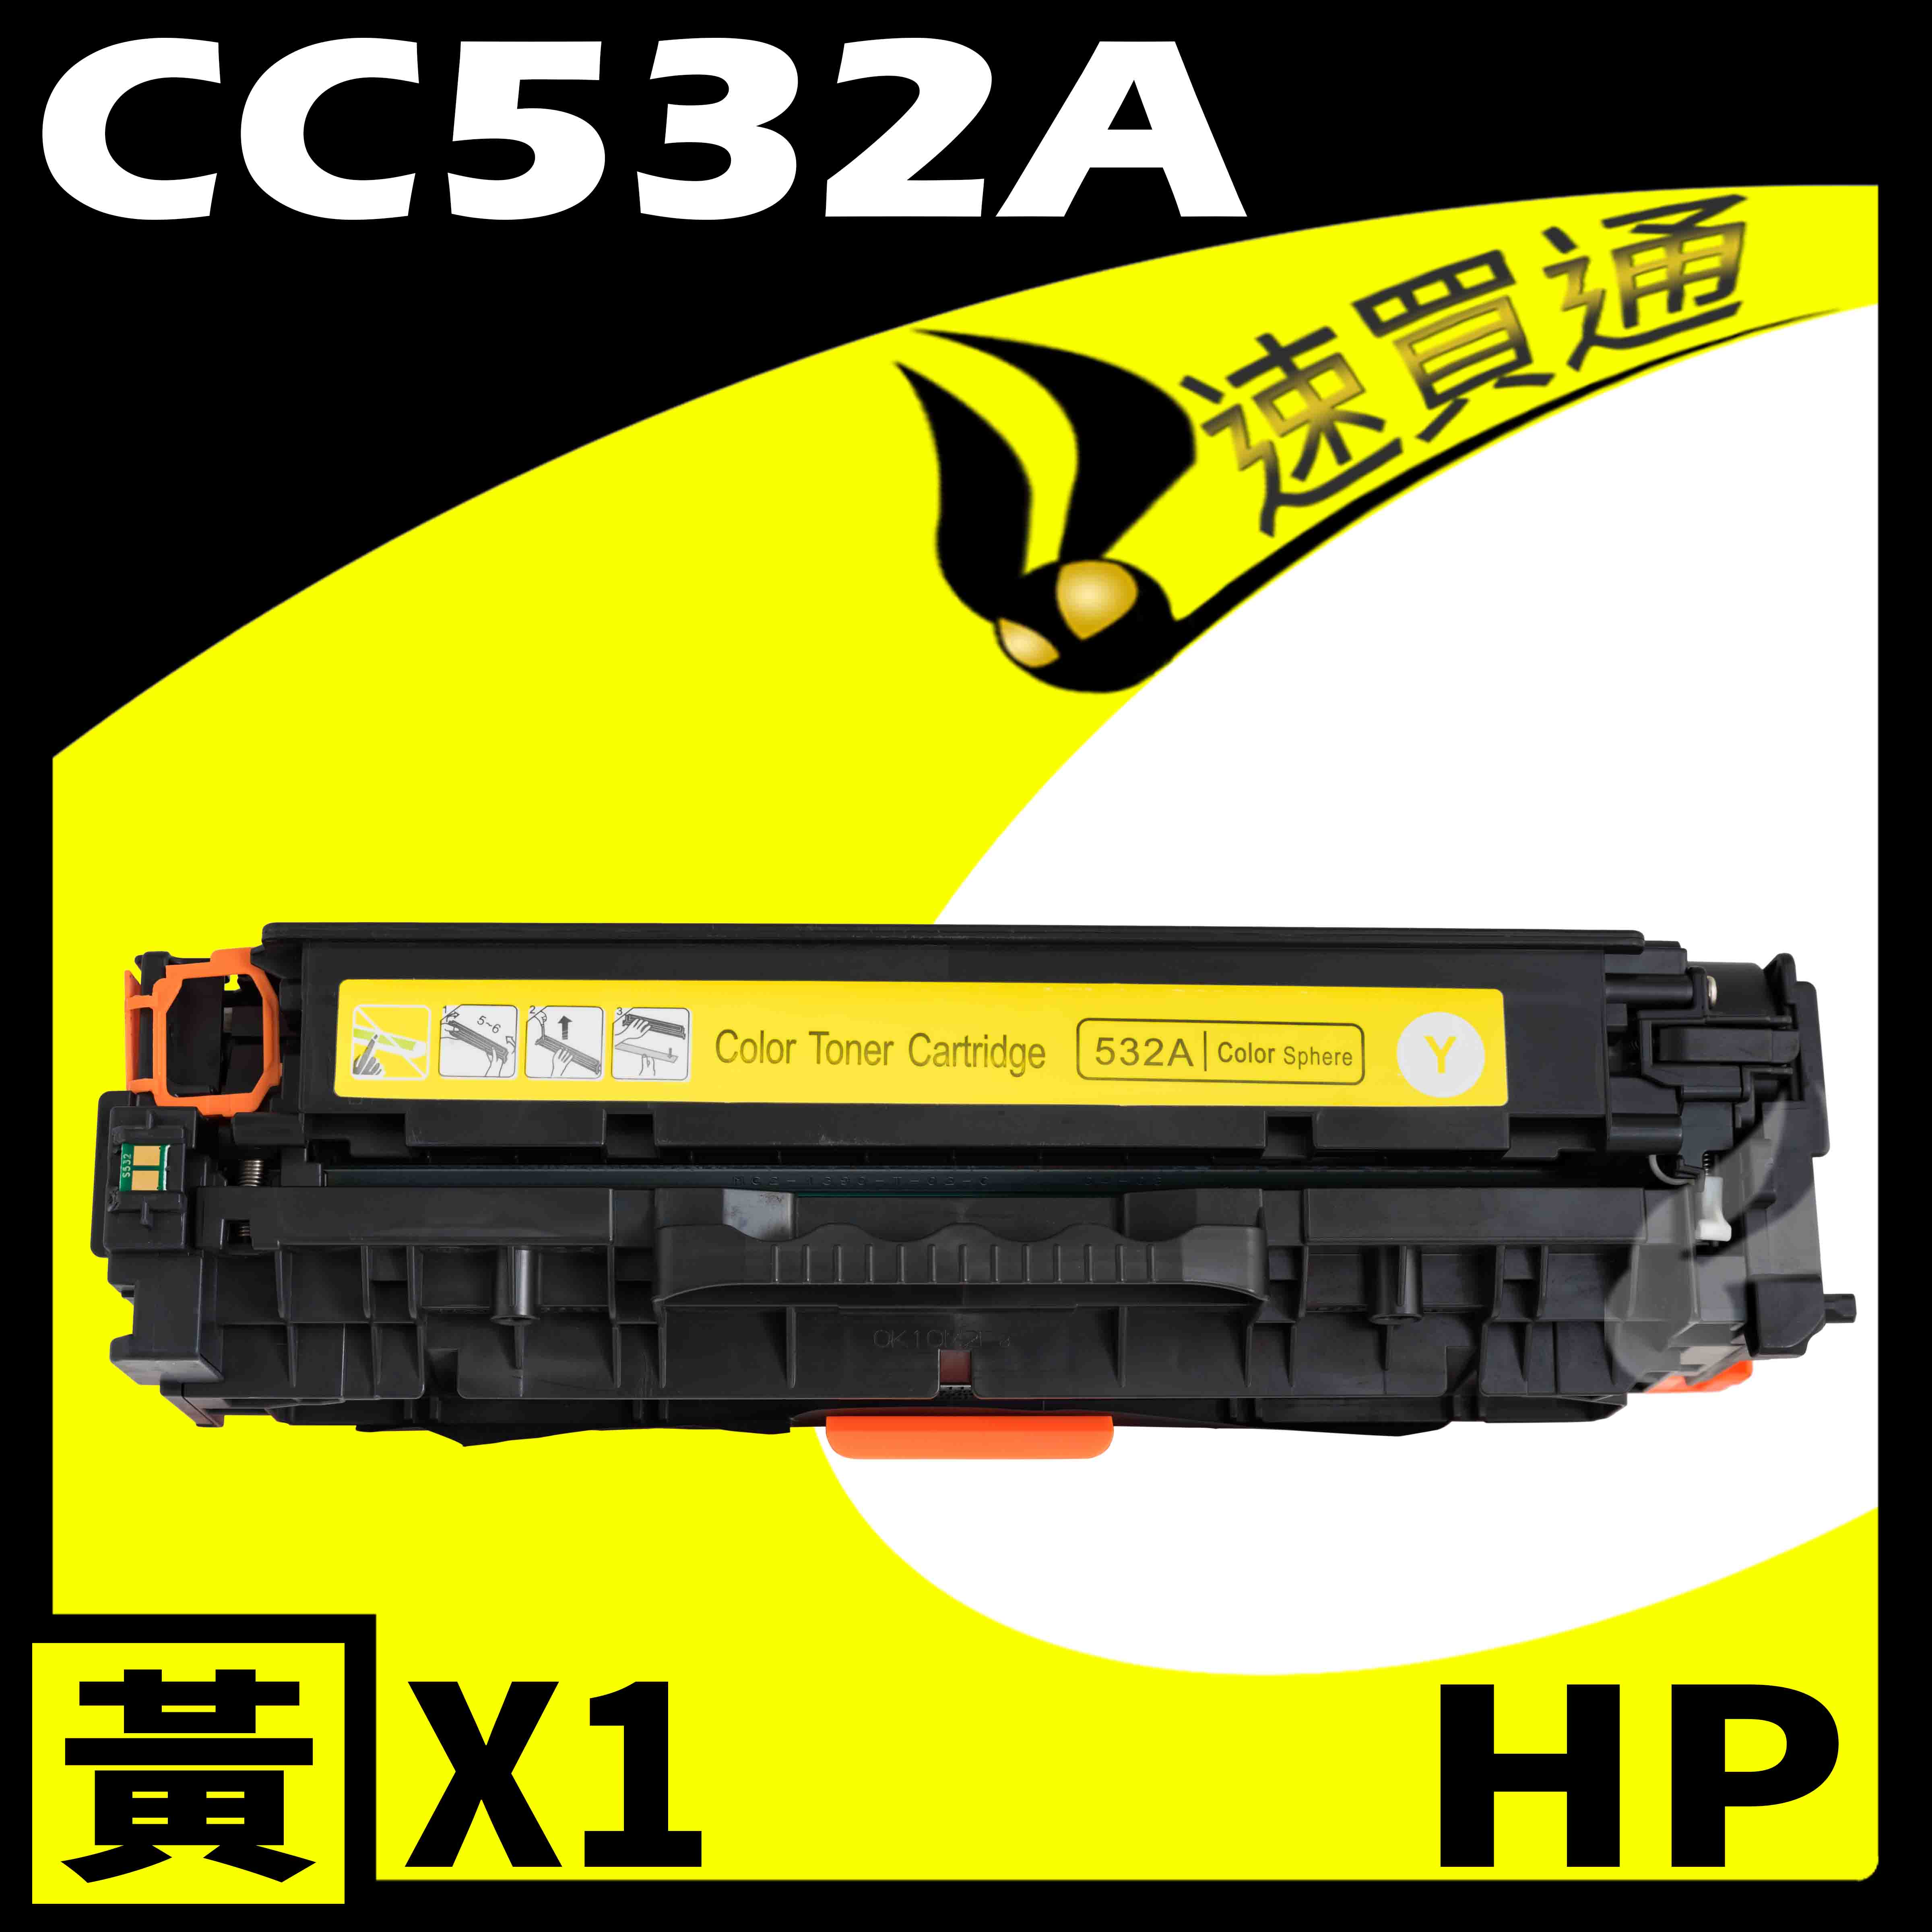 【速買通】HP CC532A 黃 相容彩色碳粉匣